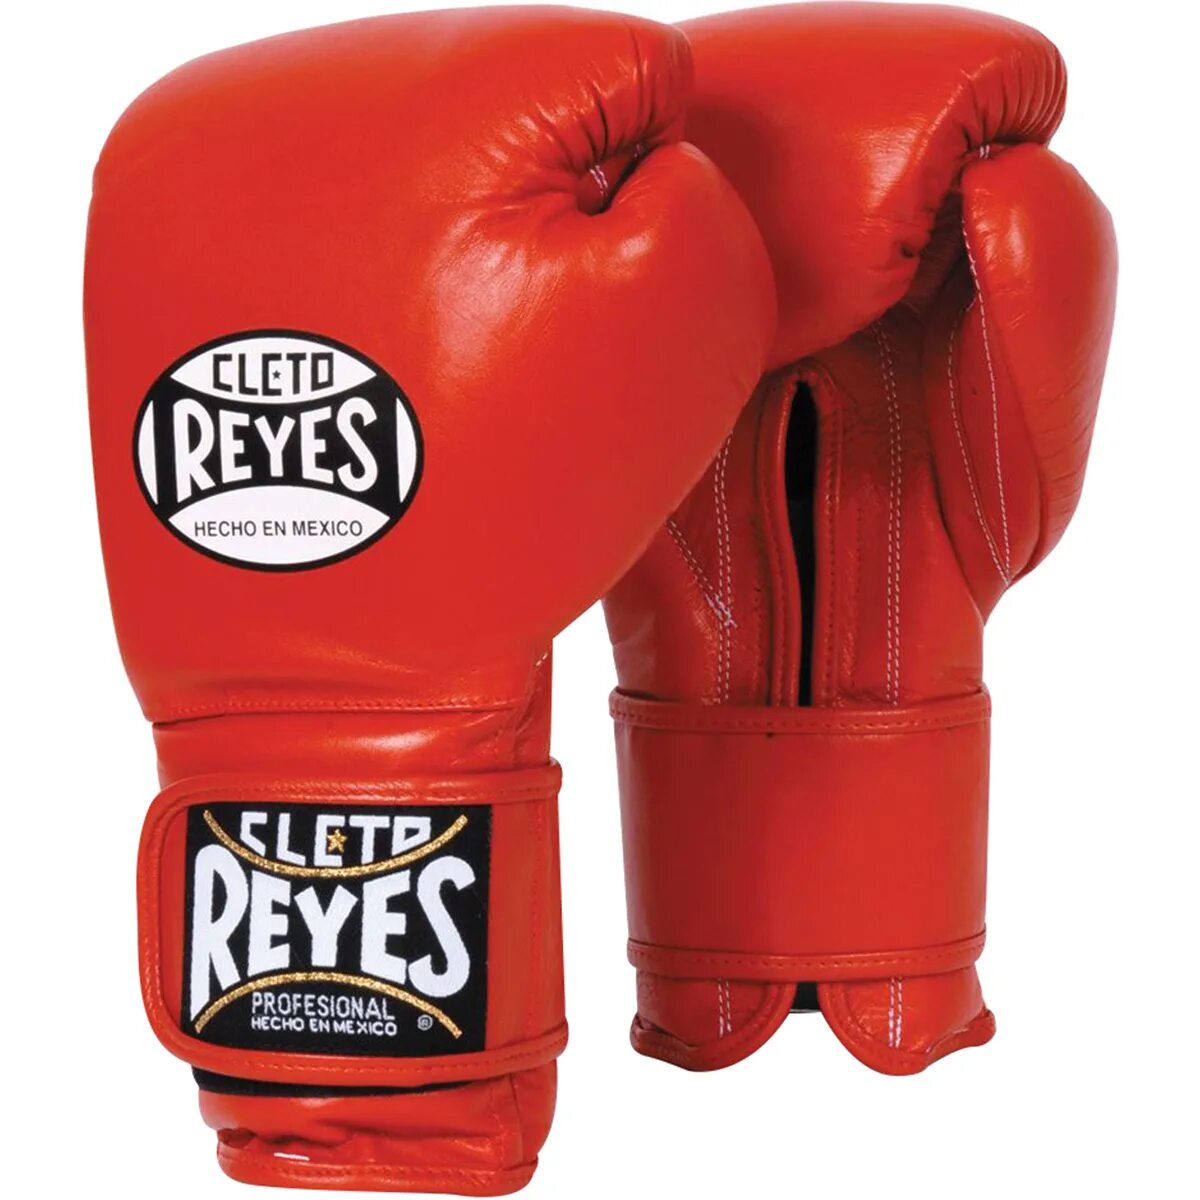 Боксерские перчатки цена. Cleto Reyes перчатки. Reyes Cleto боксерские. Клето рейс боксерские перчатки. Reyes перчатки для бокса.